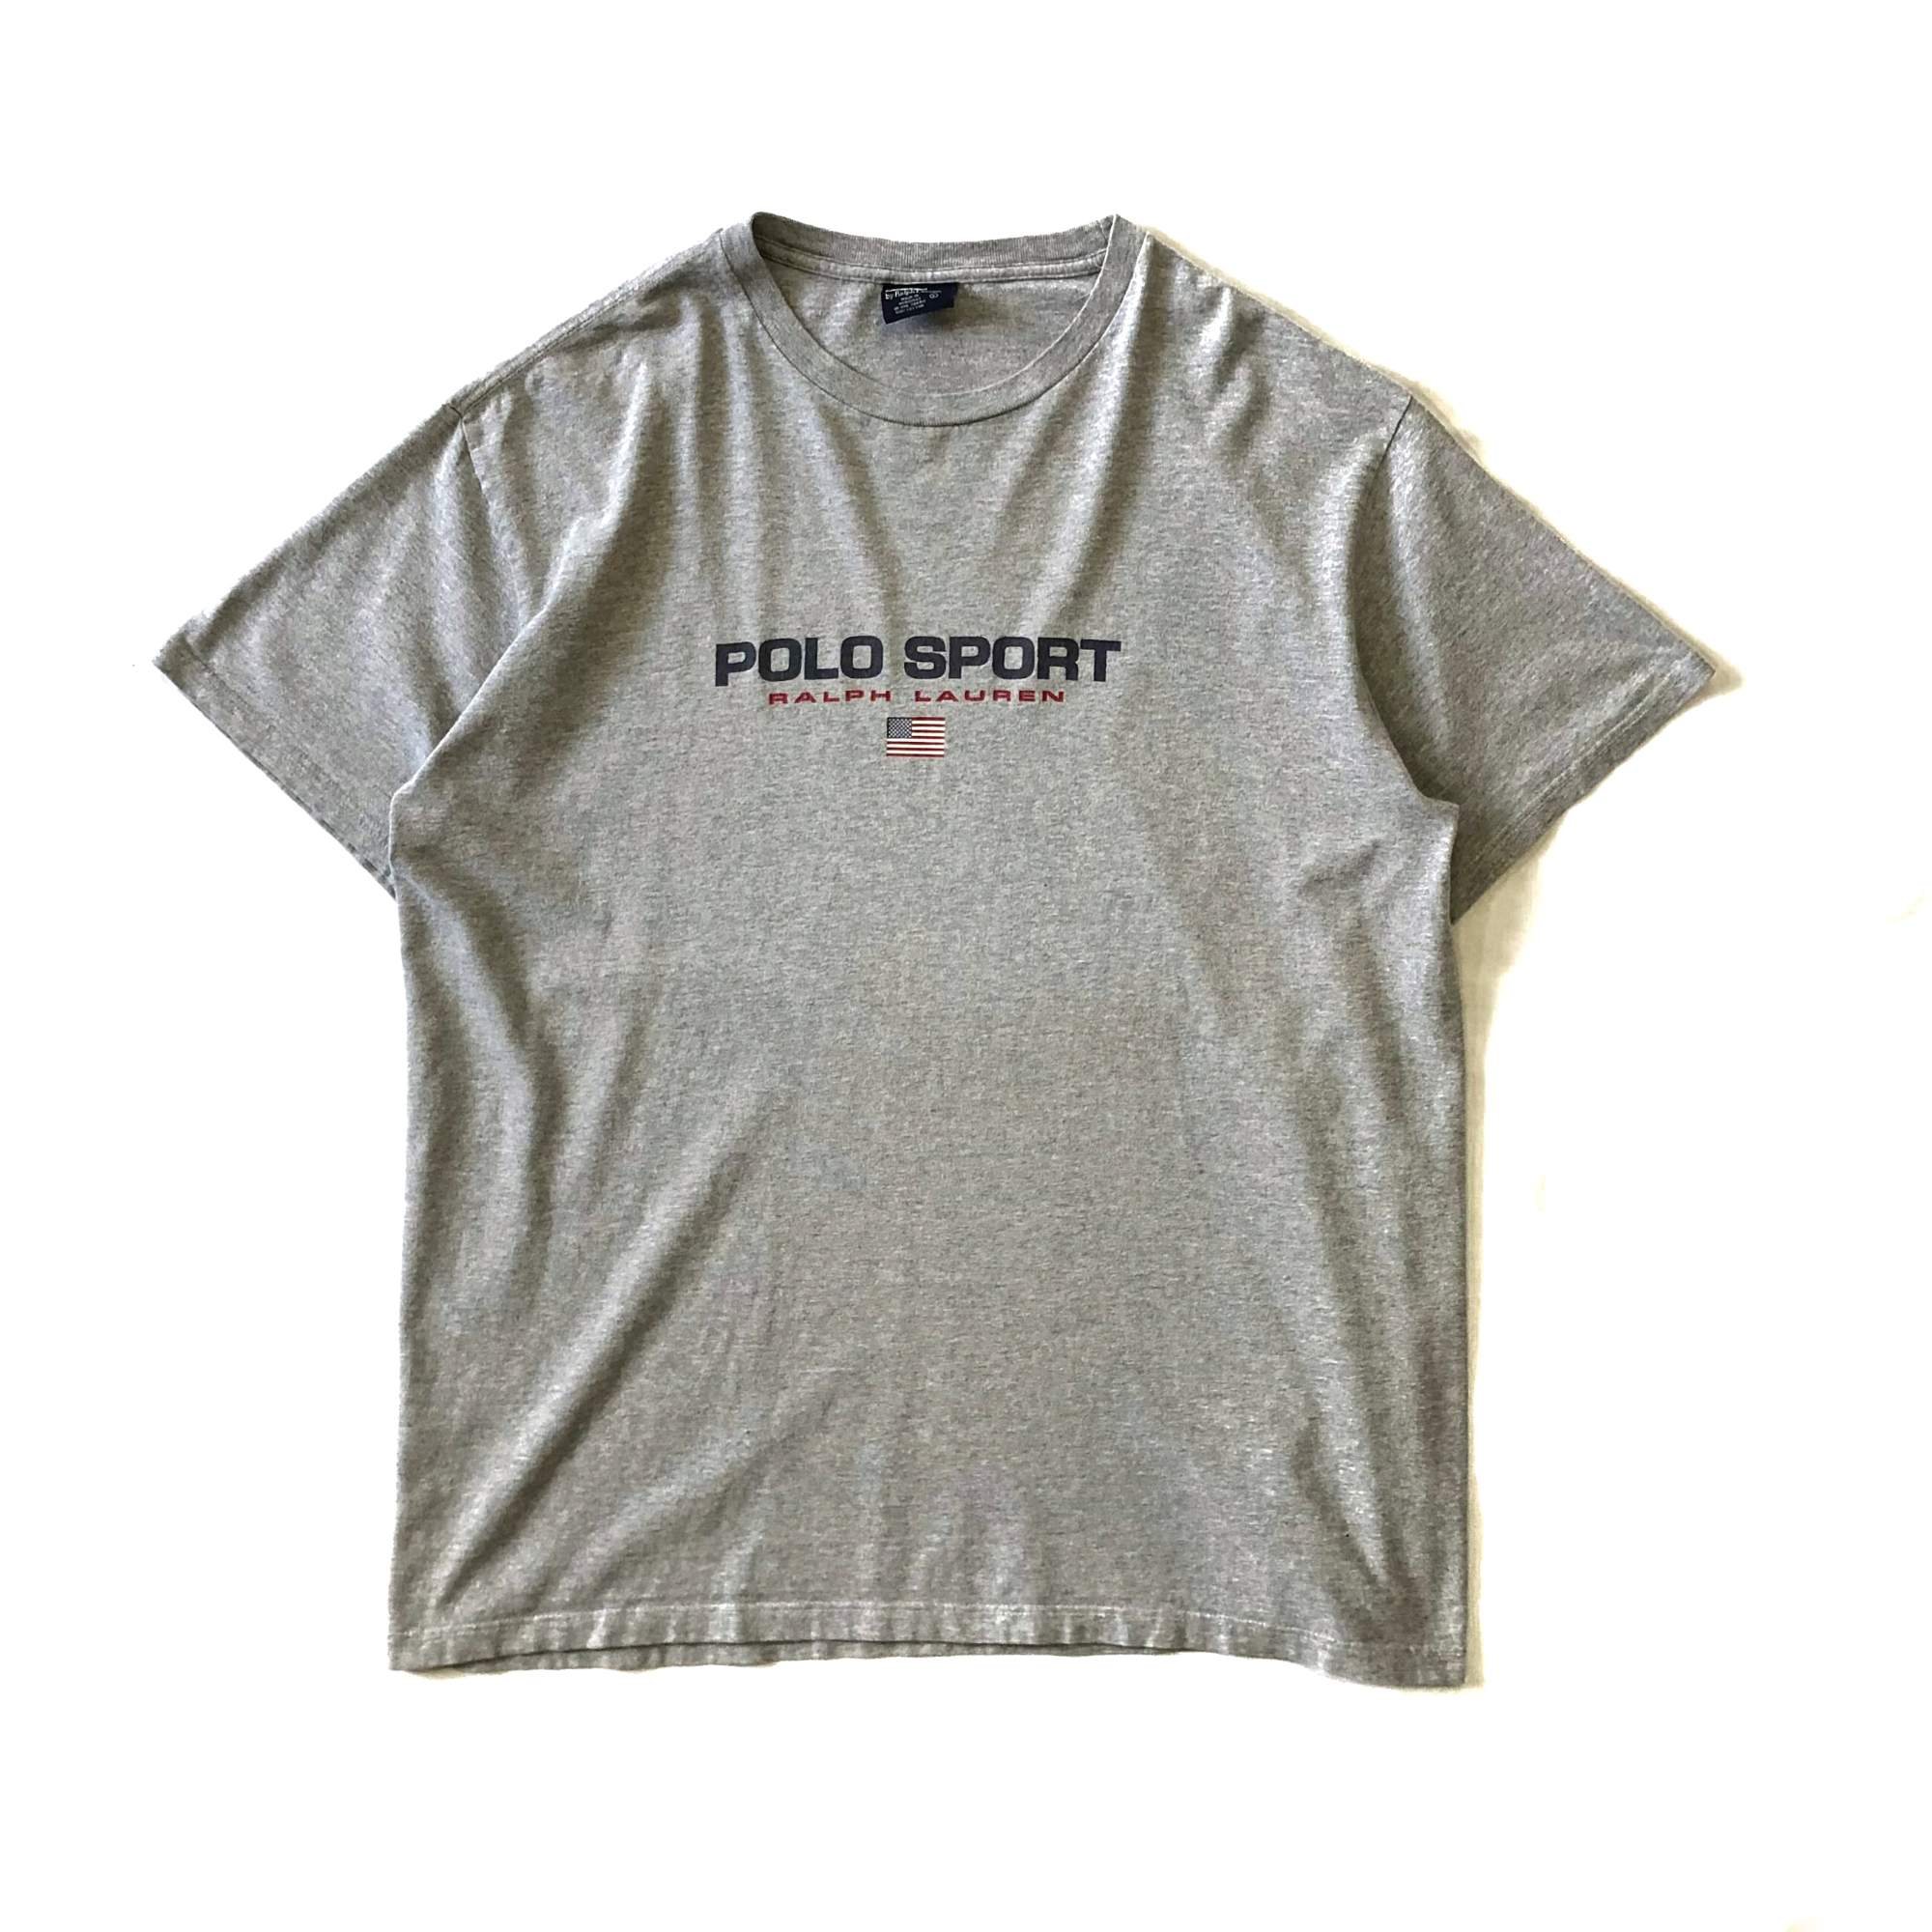 polo sport tシャツ - Tシャツ